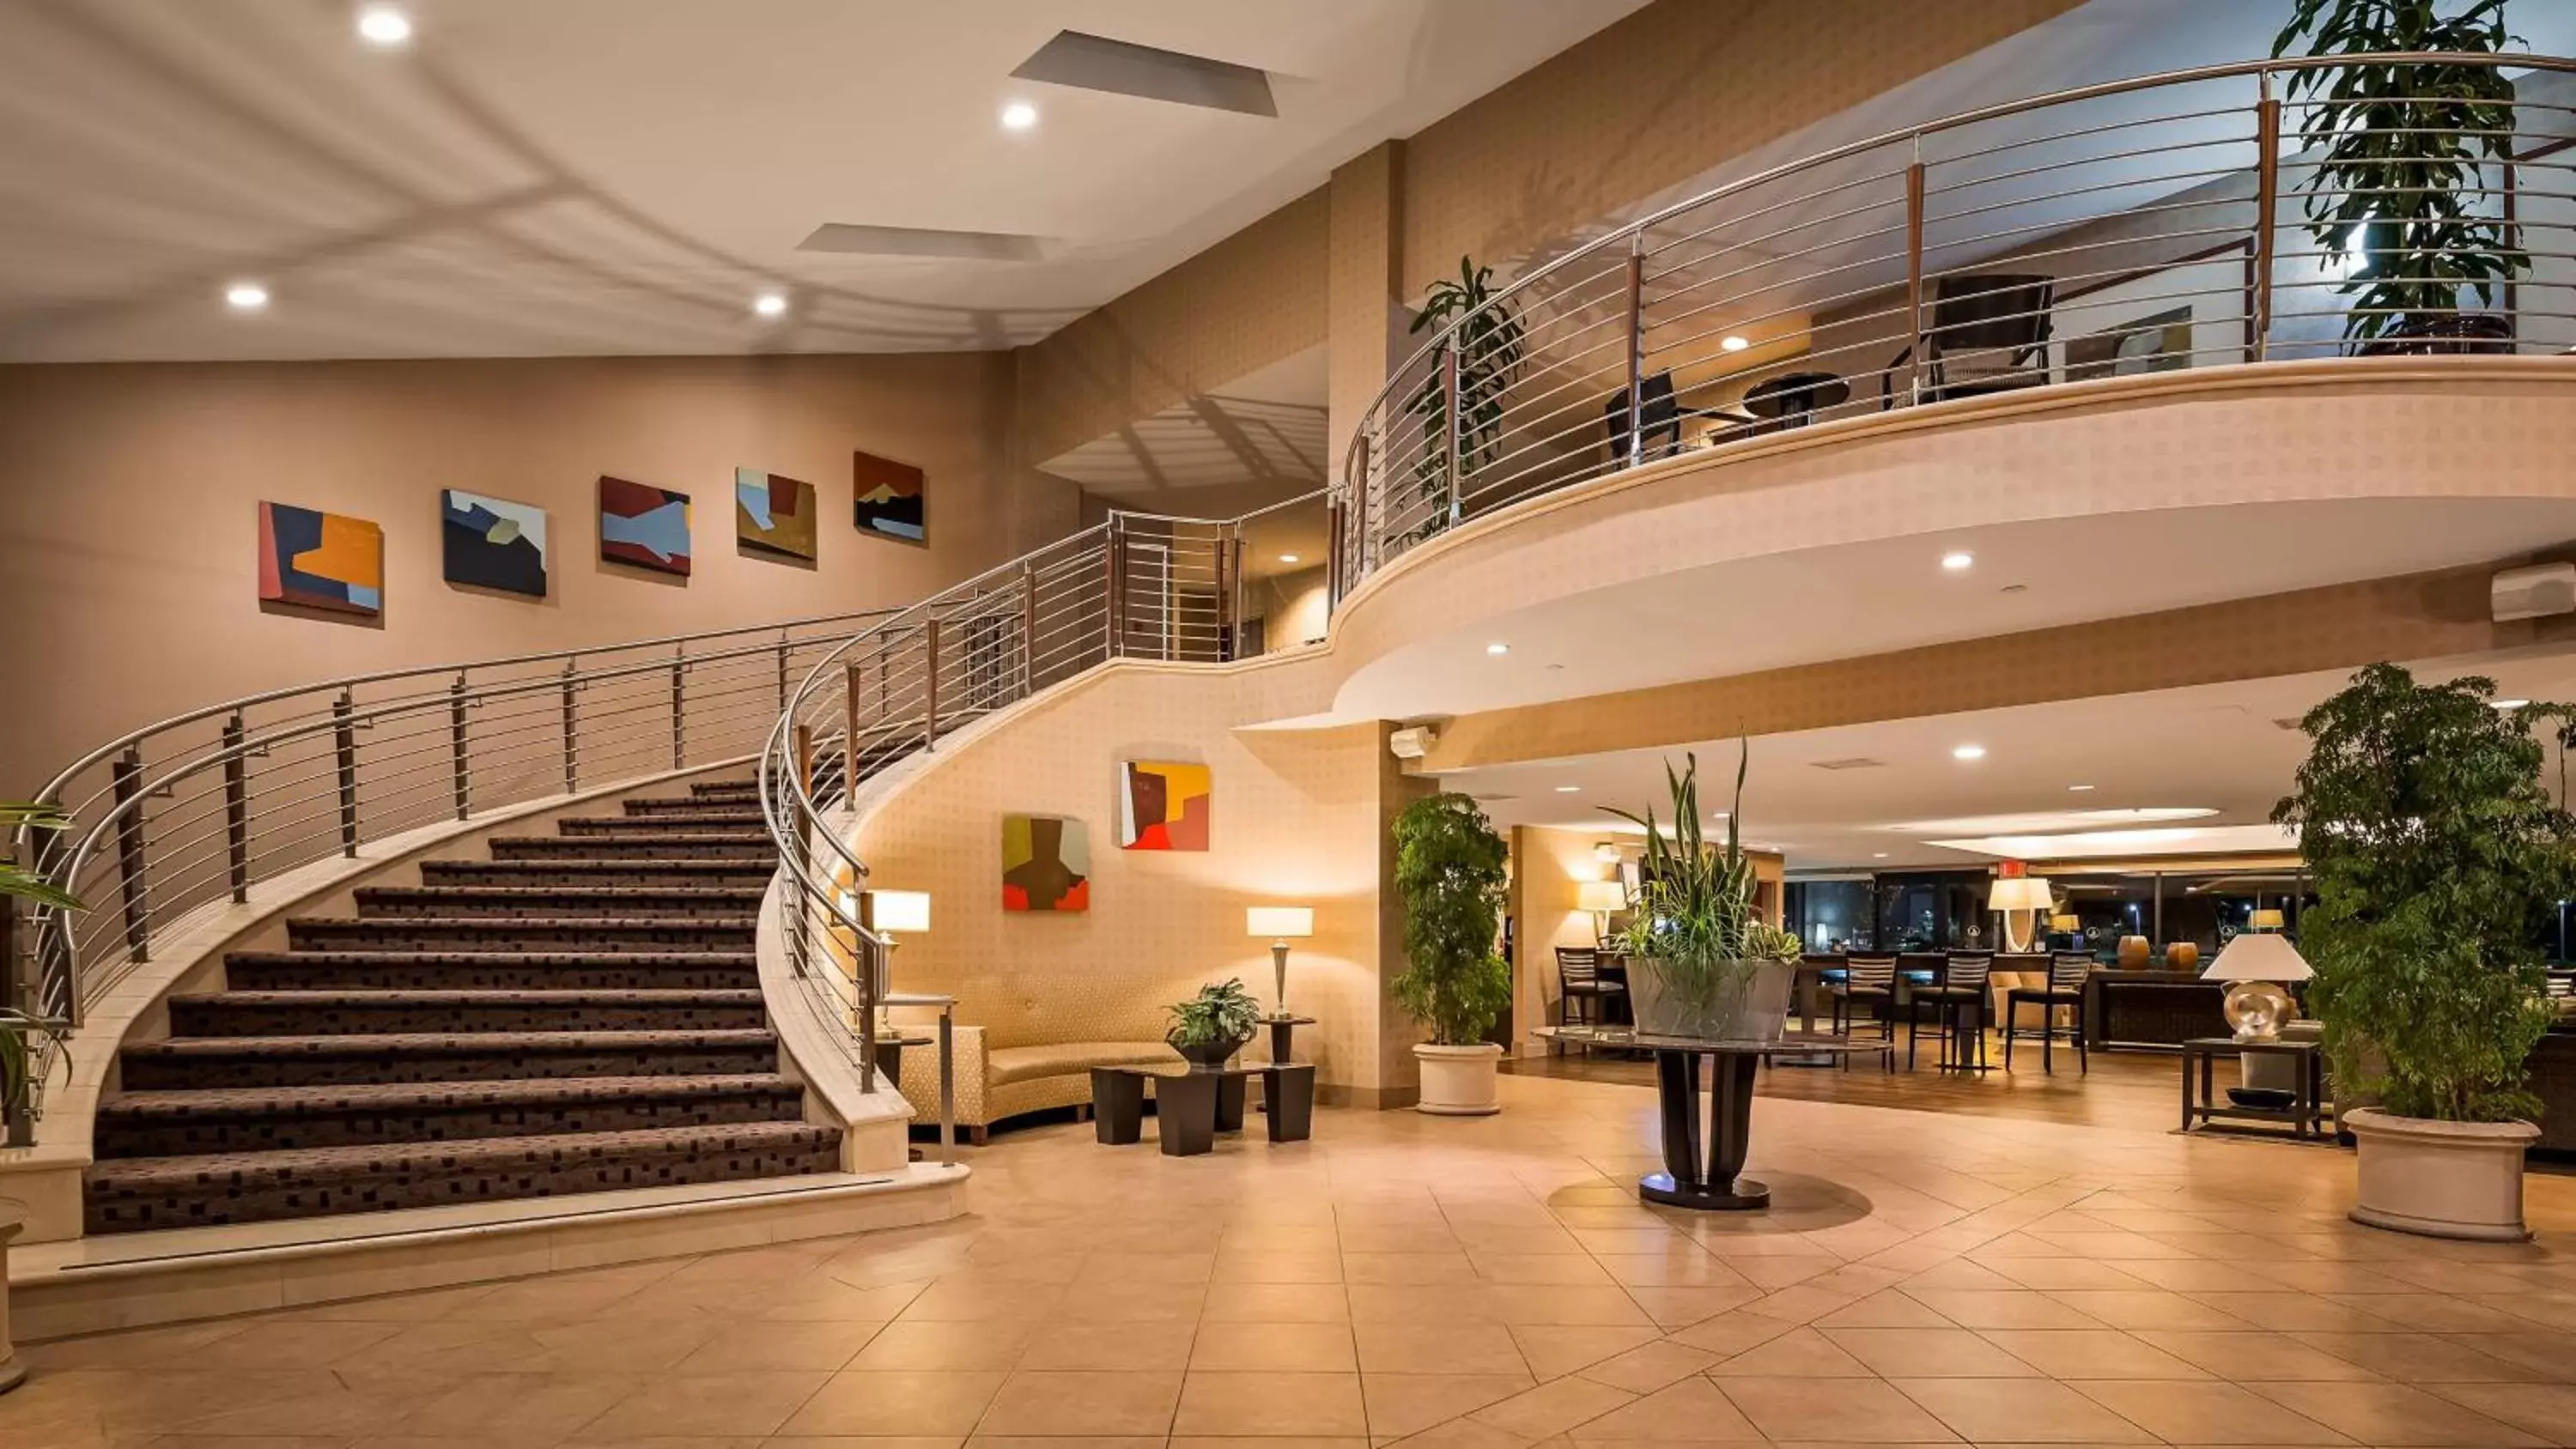 Lobby or reception, Lobby/Reception in Best Western Plus Bayside Hotel